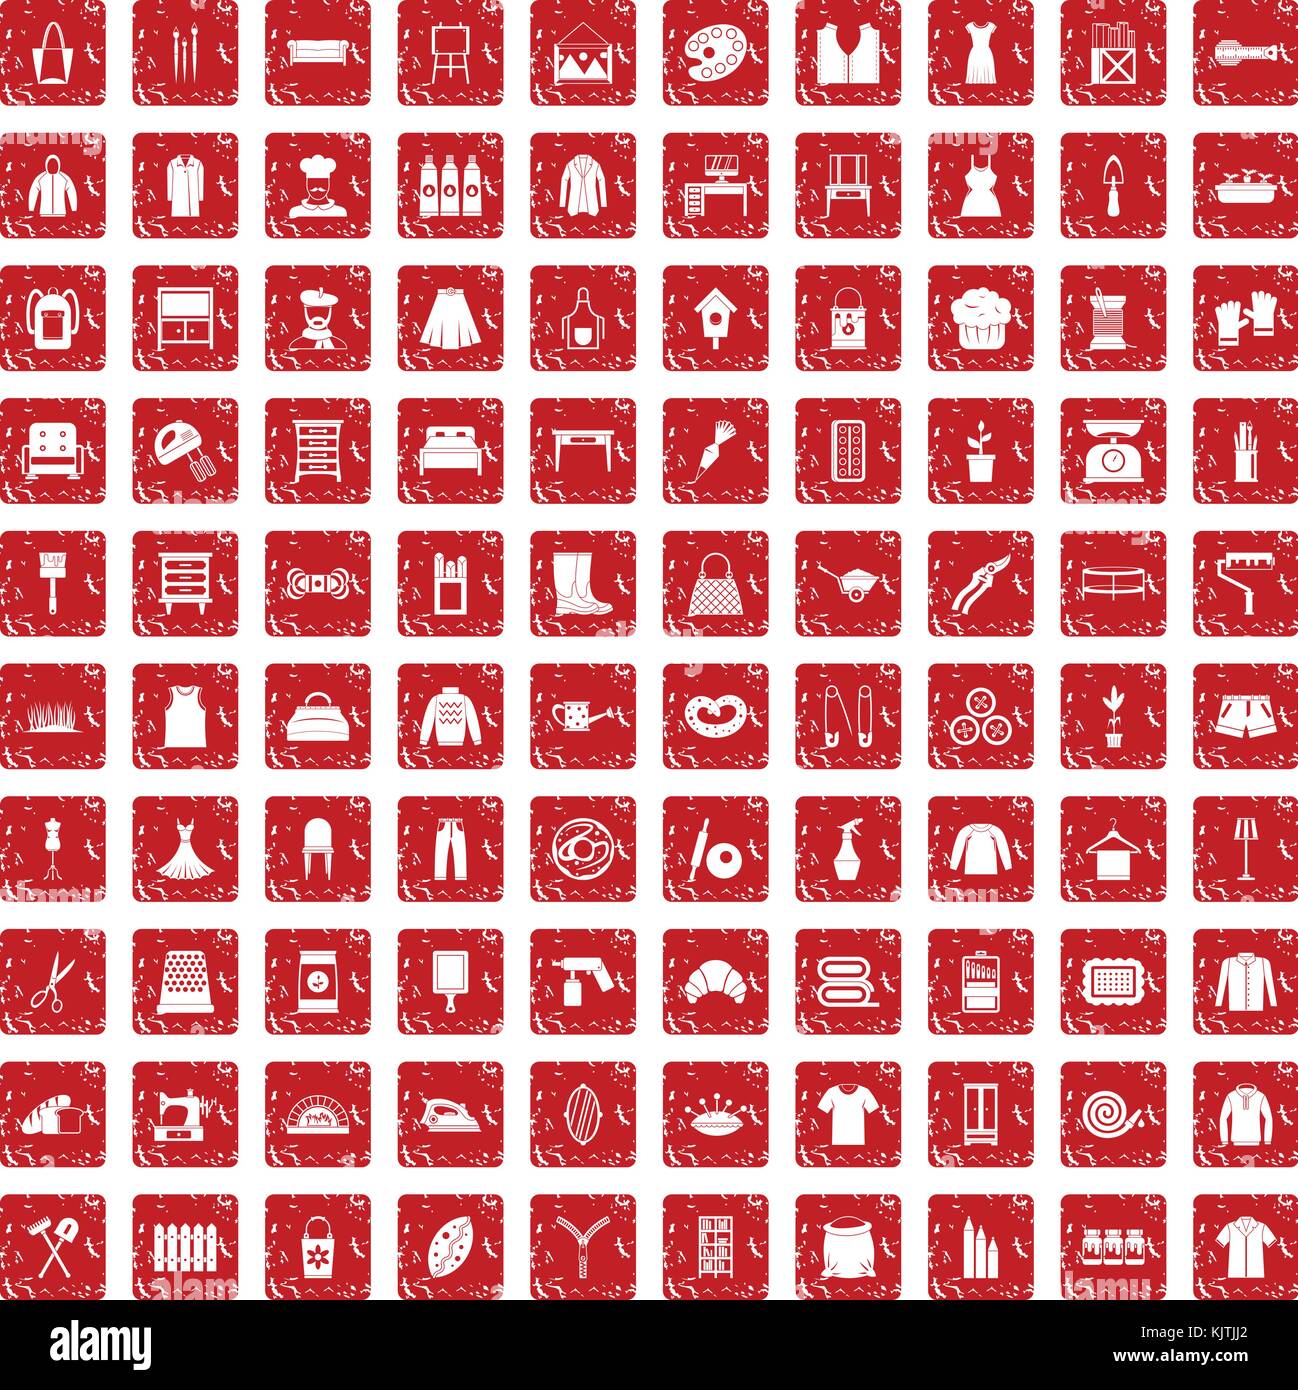 100 Handarbeit Icons Set grunge Rot Stock Vektor